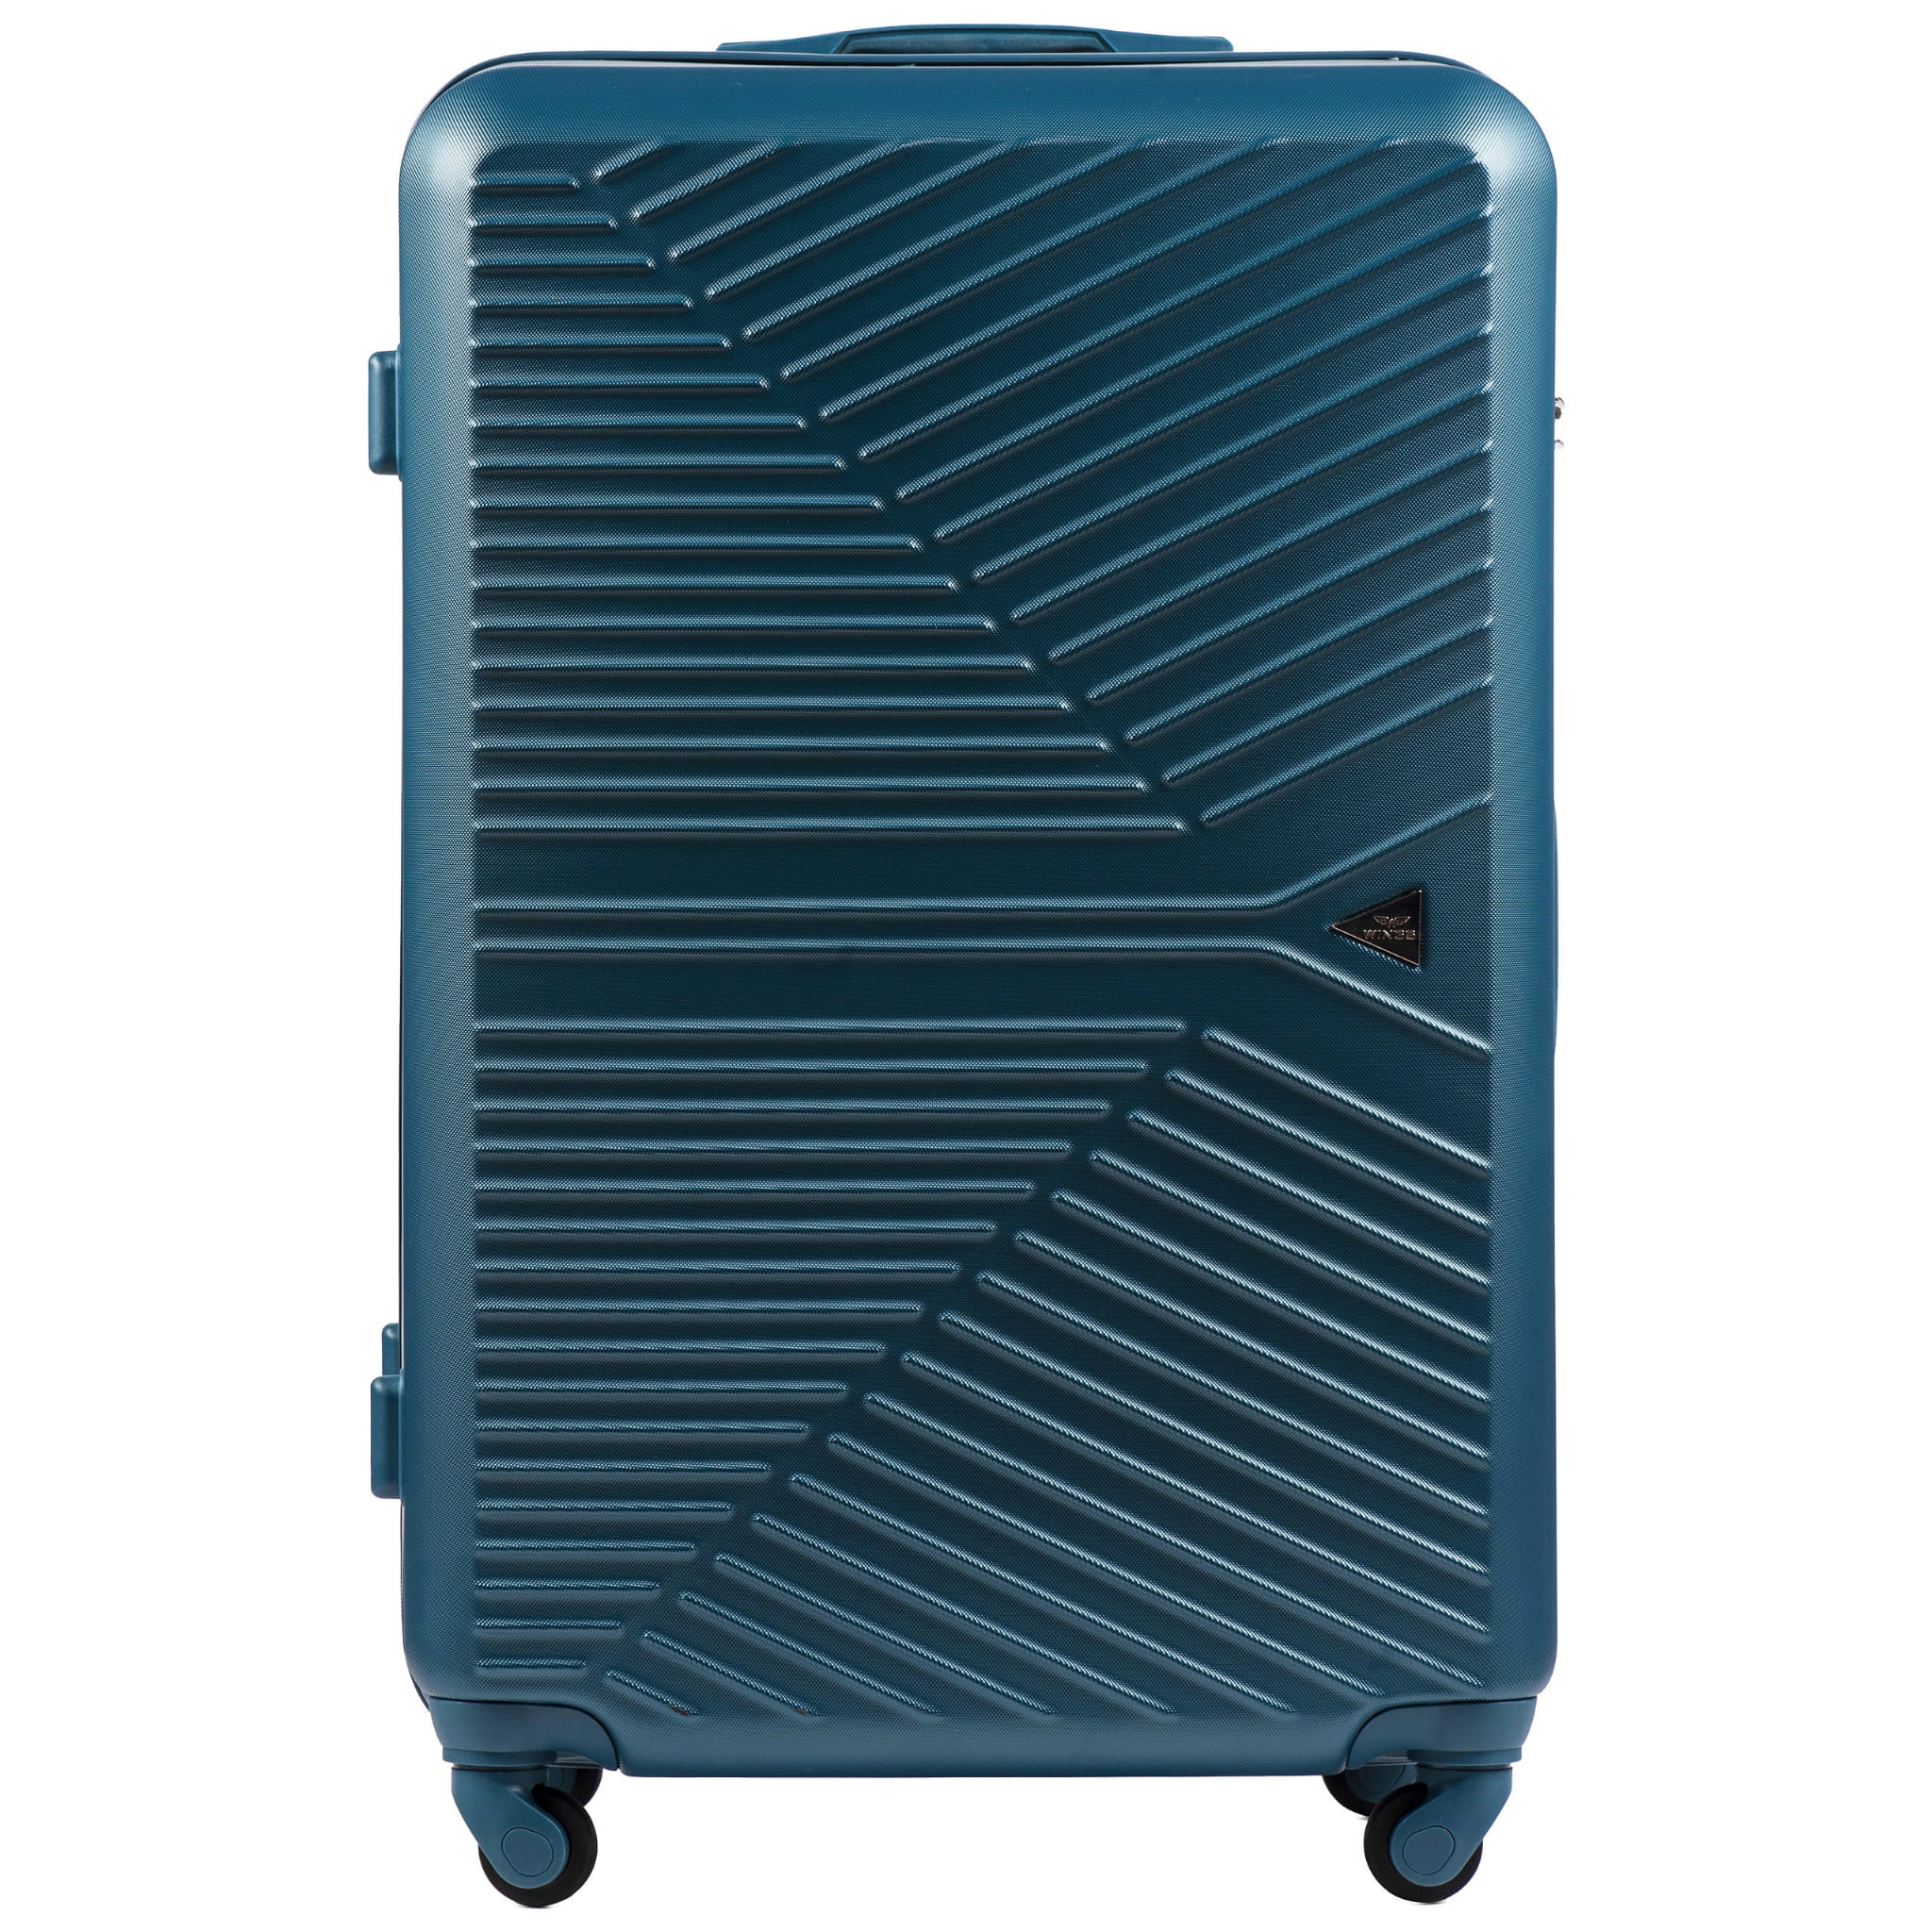 266-sinine-suur-reisikohver-l-ABS(plastik)-97l-kohvrimaailm-eest